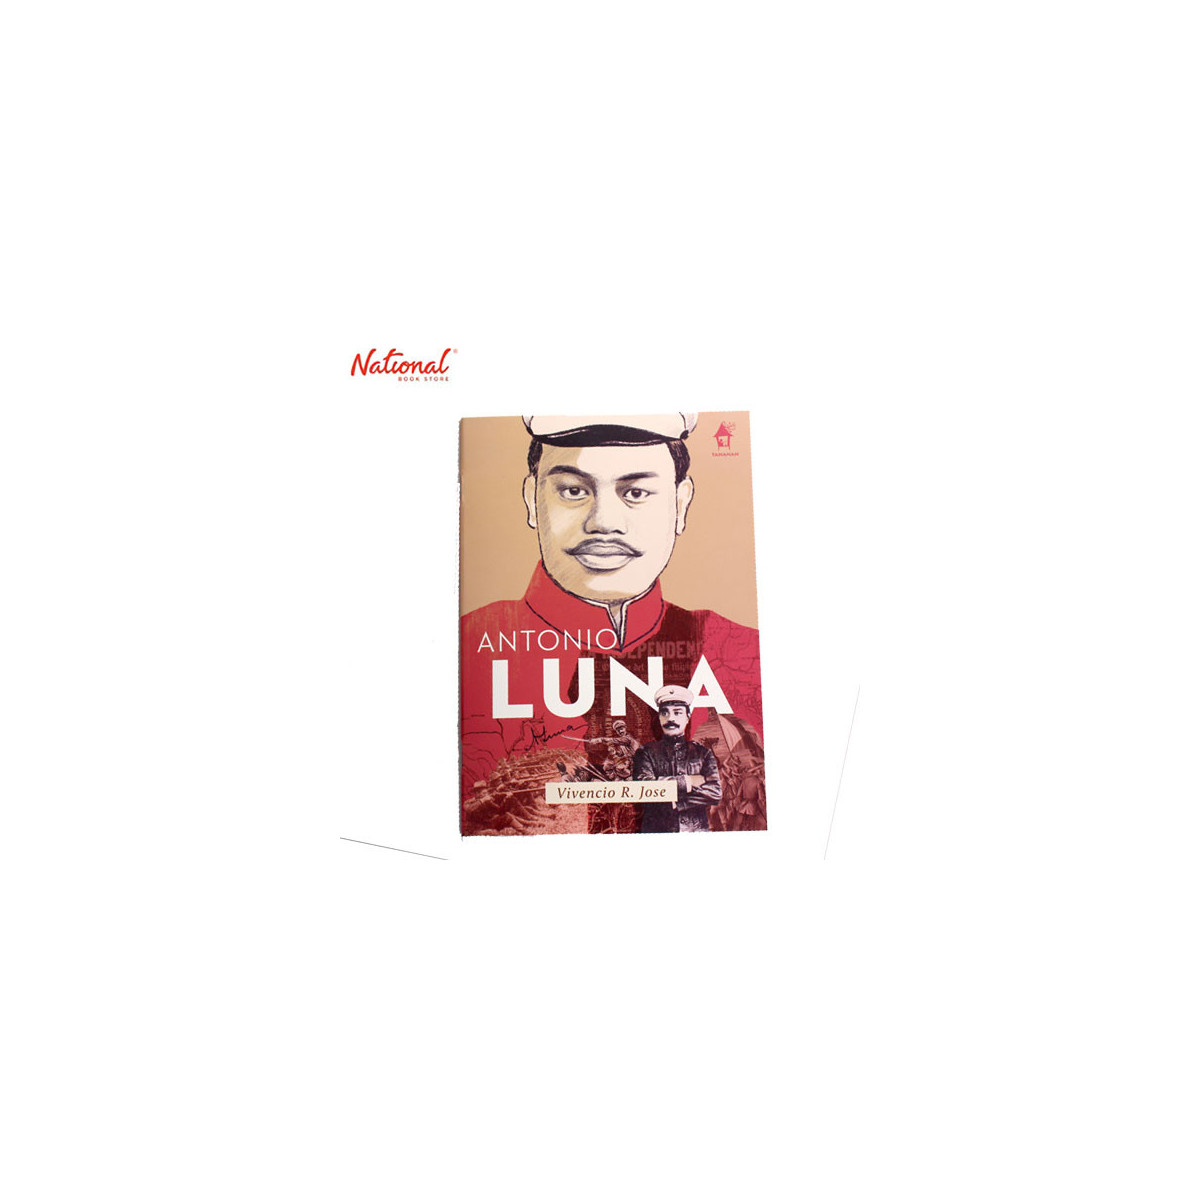 autobiography of antonio luna